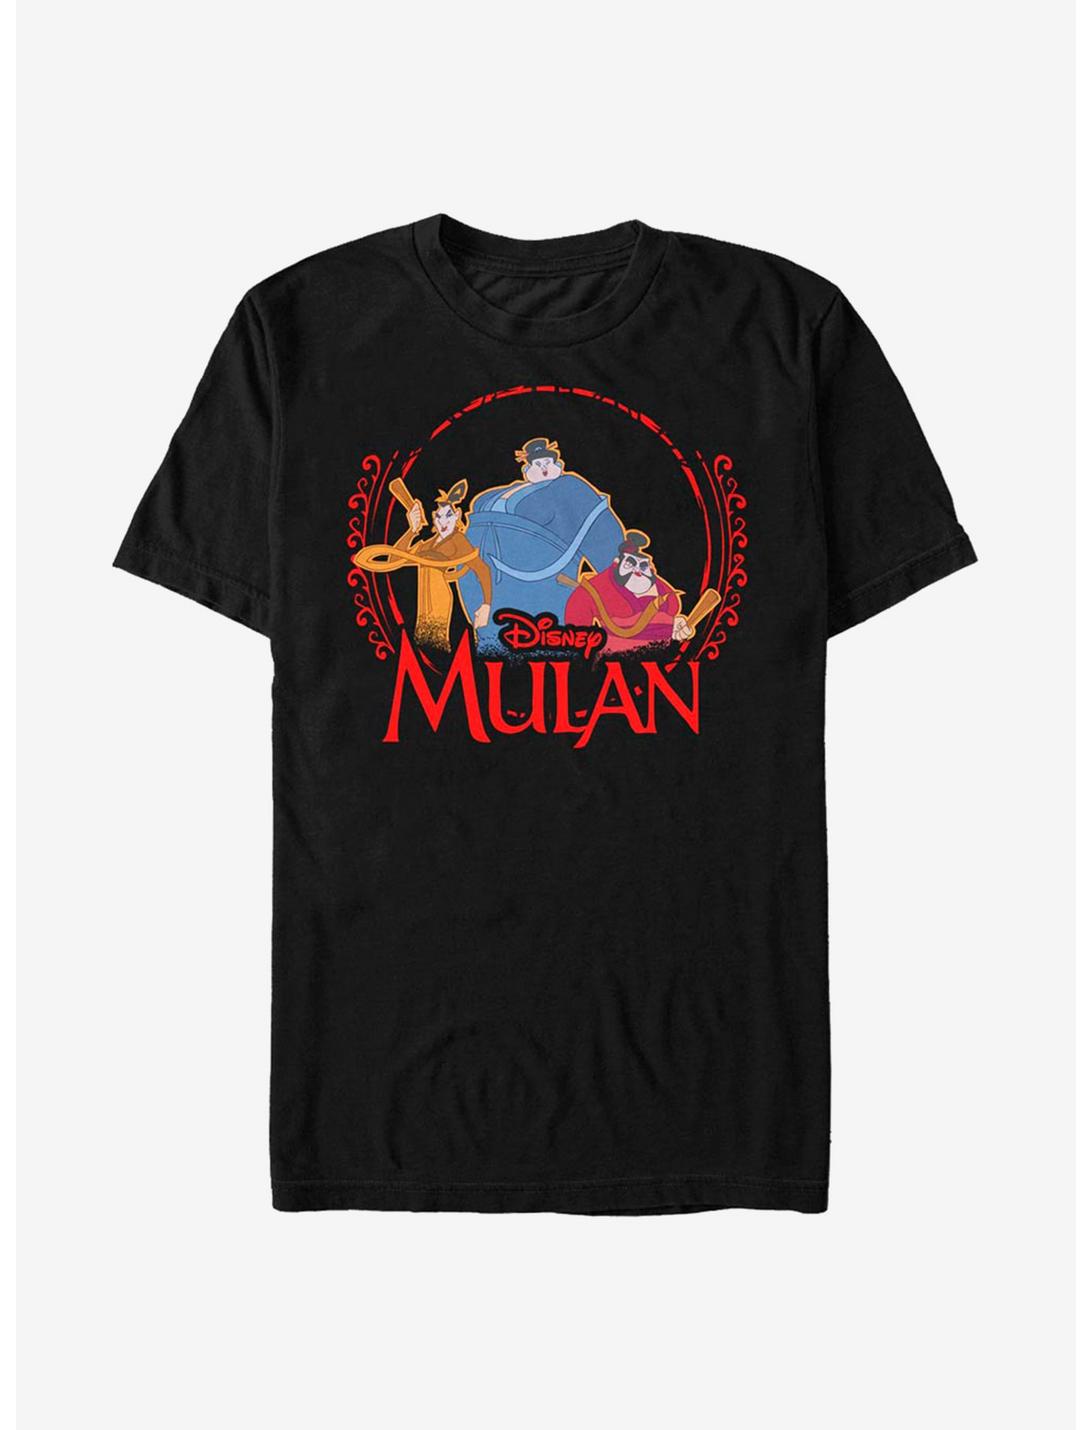 Disney Mulan Squad Goals T-Shirt, BLACK, hi-res